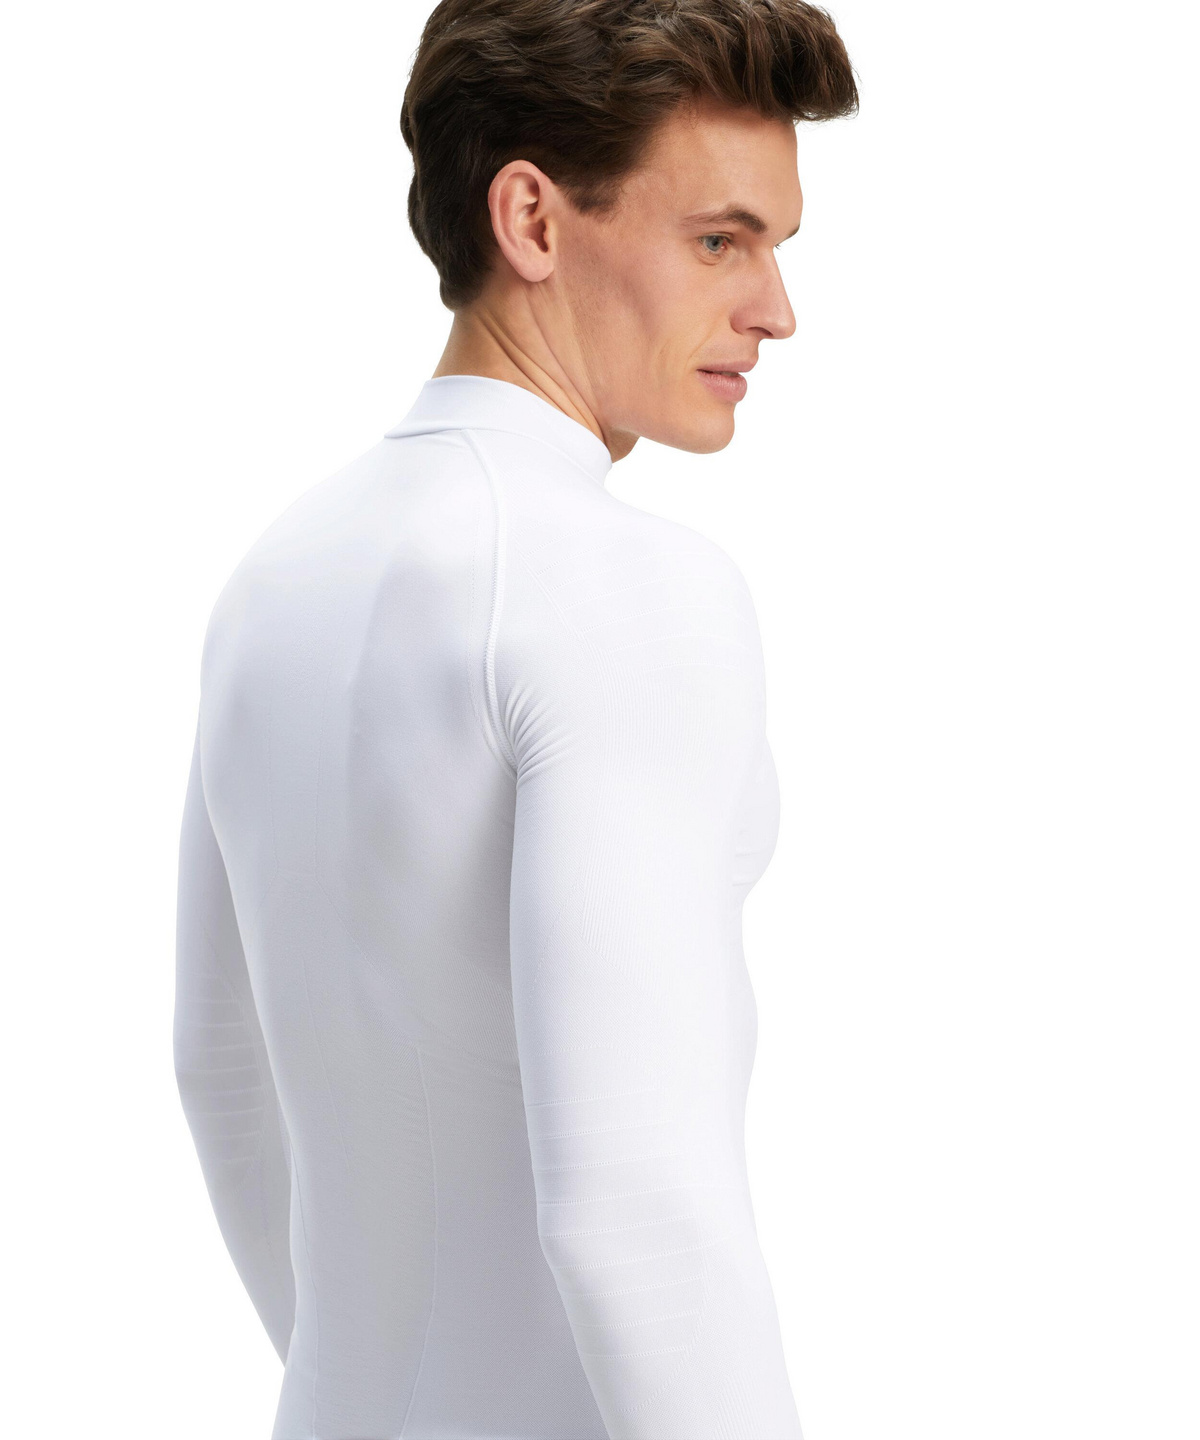 Farben versch Sport Performance Material 1 Stück Langarm-Shirt in körpernaher Passform FALKE Herren Long Sleeve Shirt Warm Tight Fit Größe S-XXL